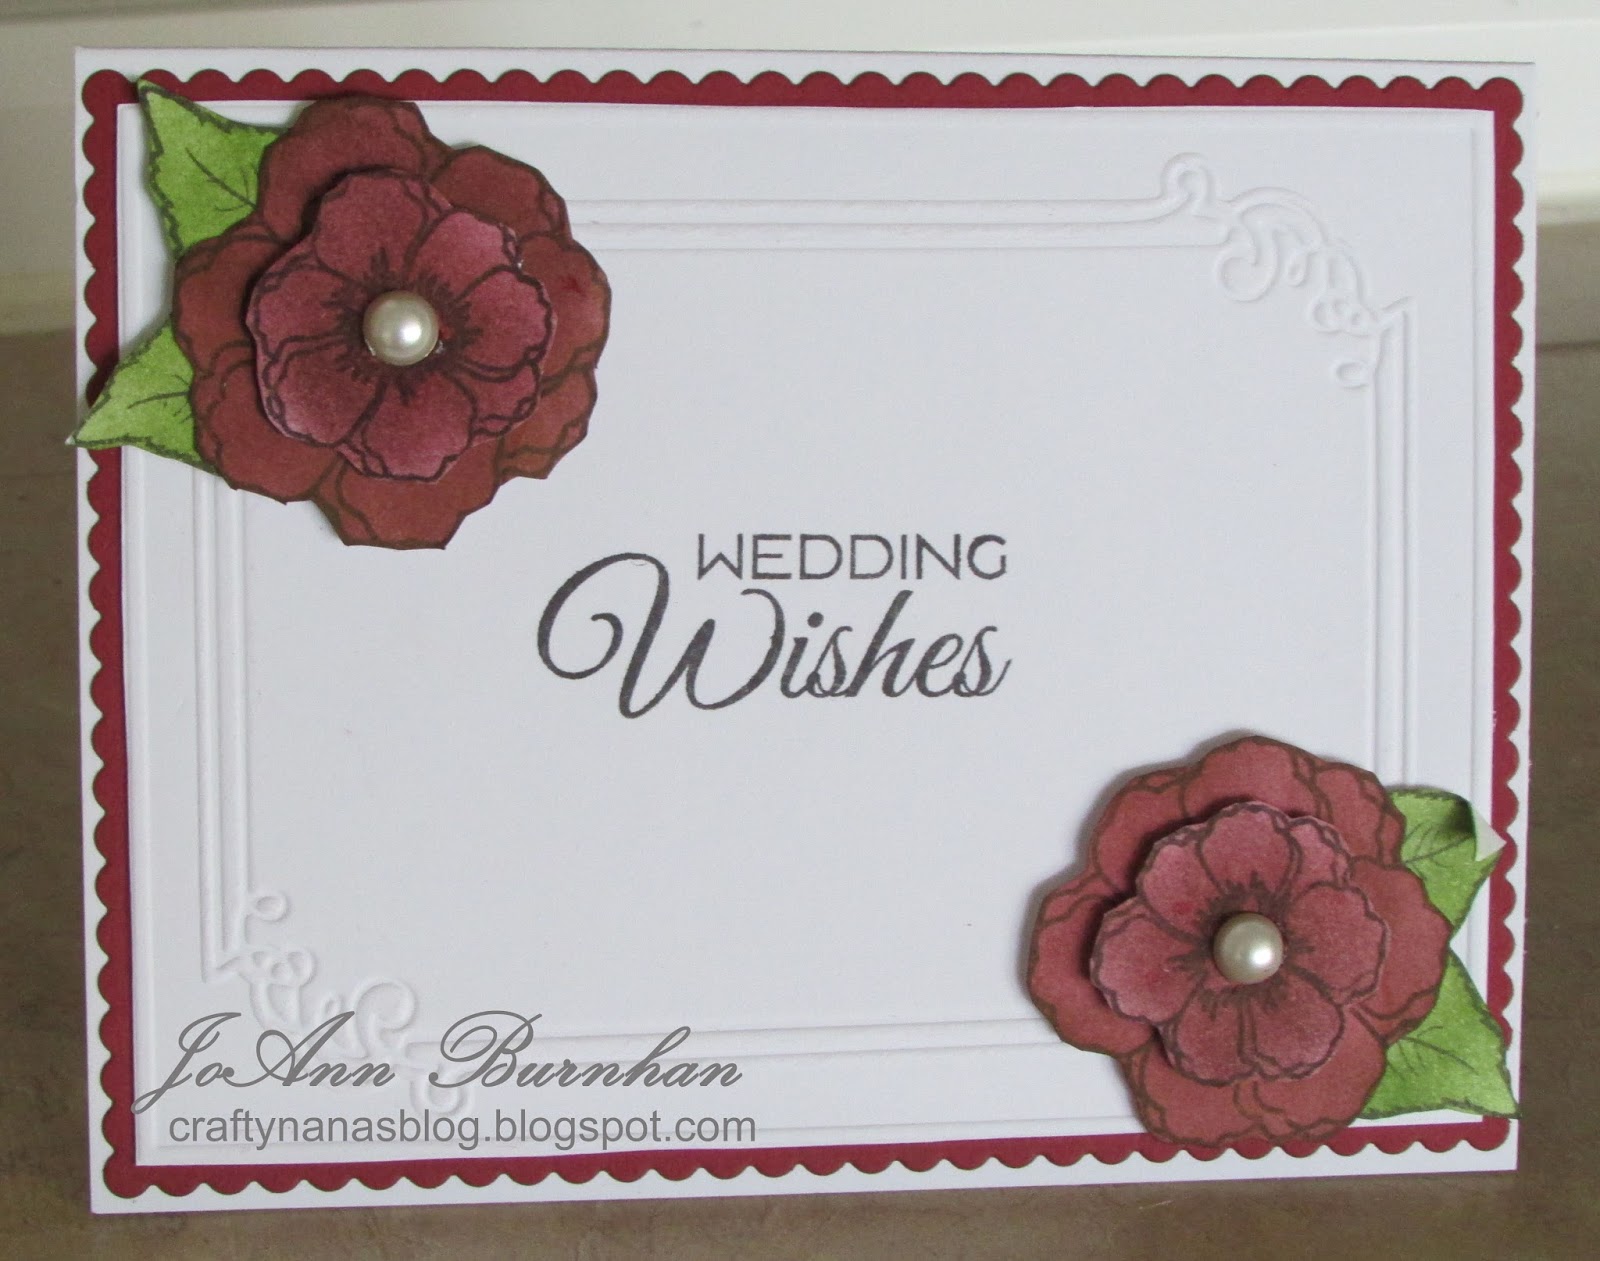 crafty-nana-s-blog-wedding-wishes